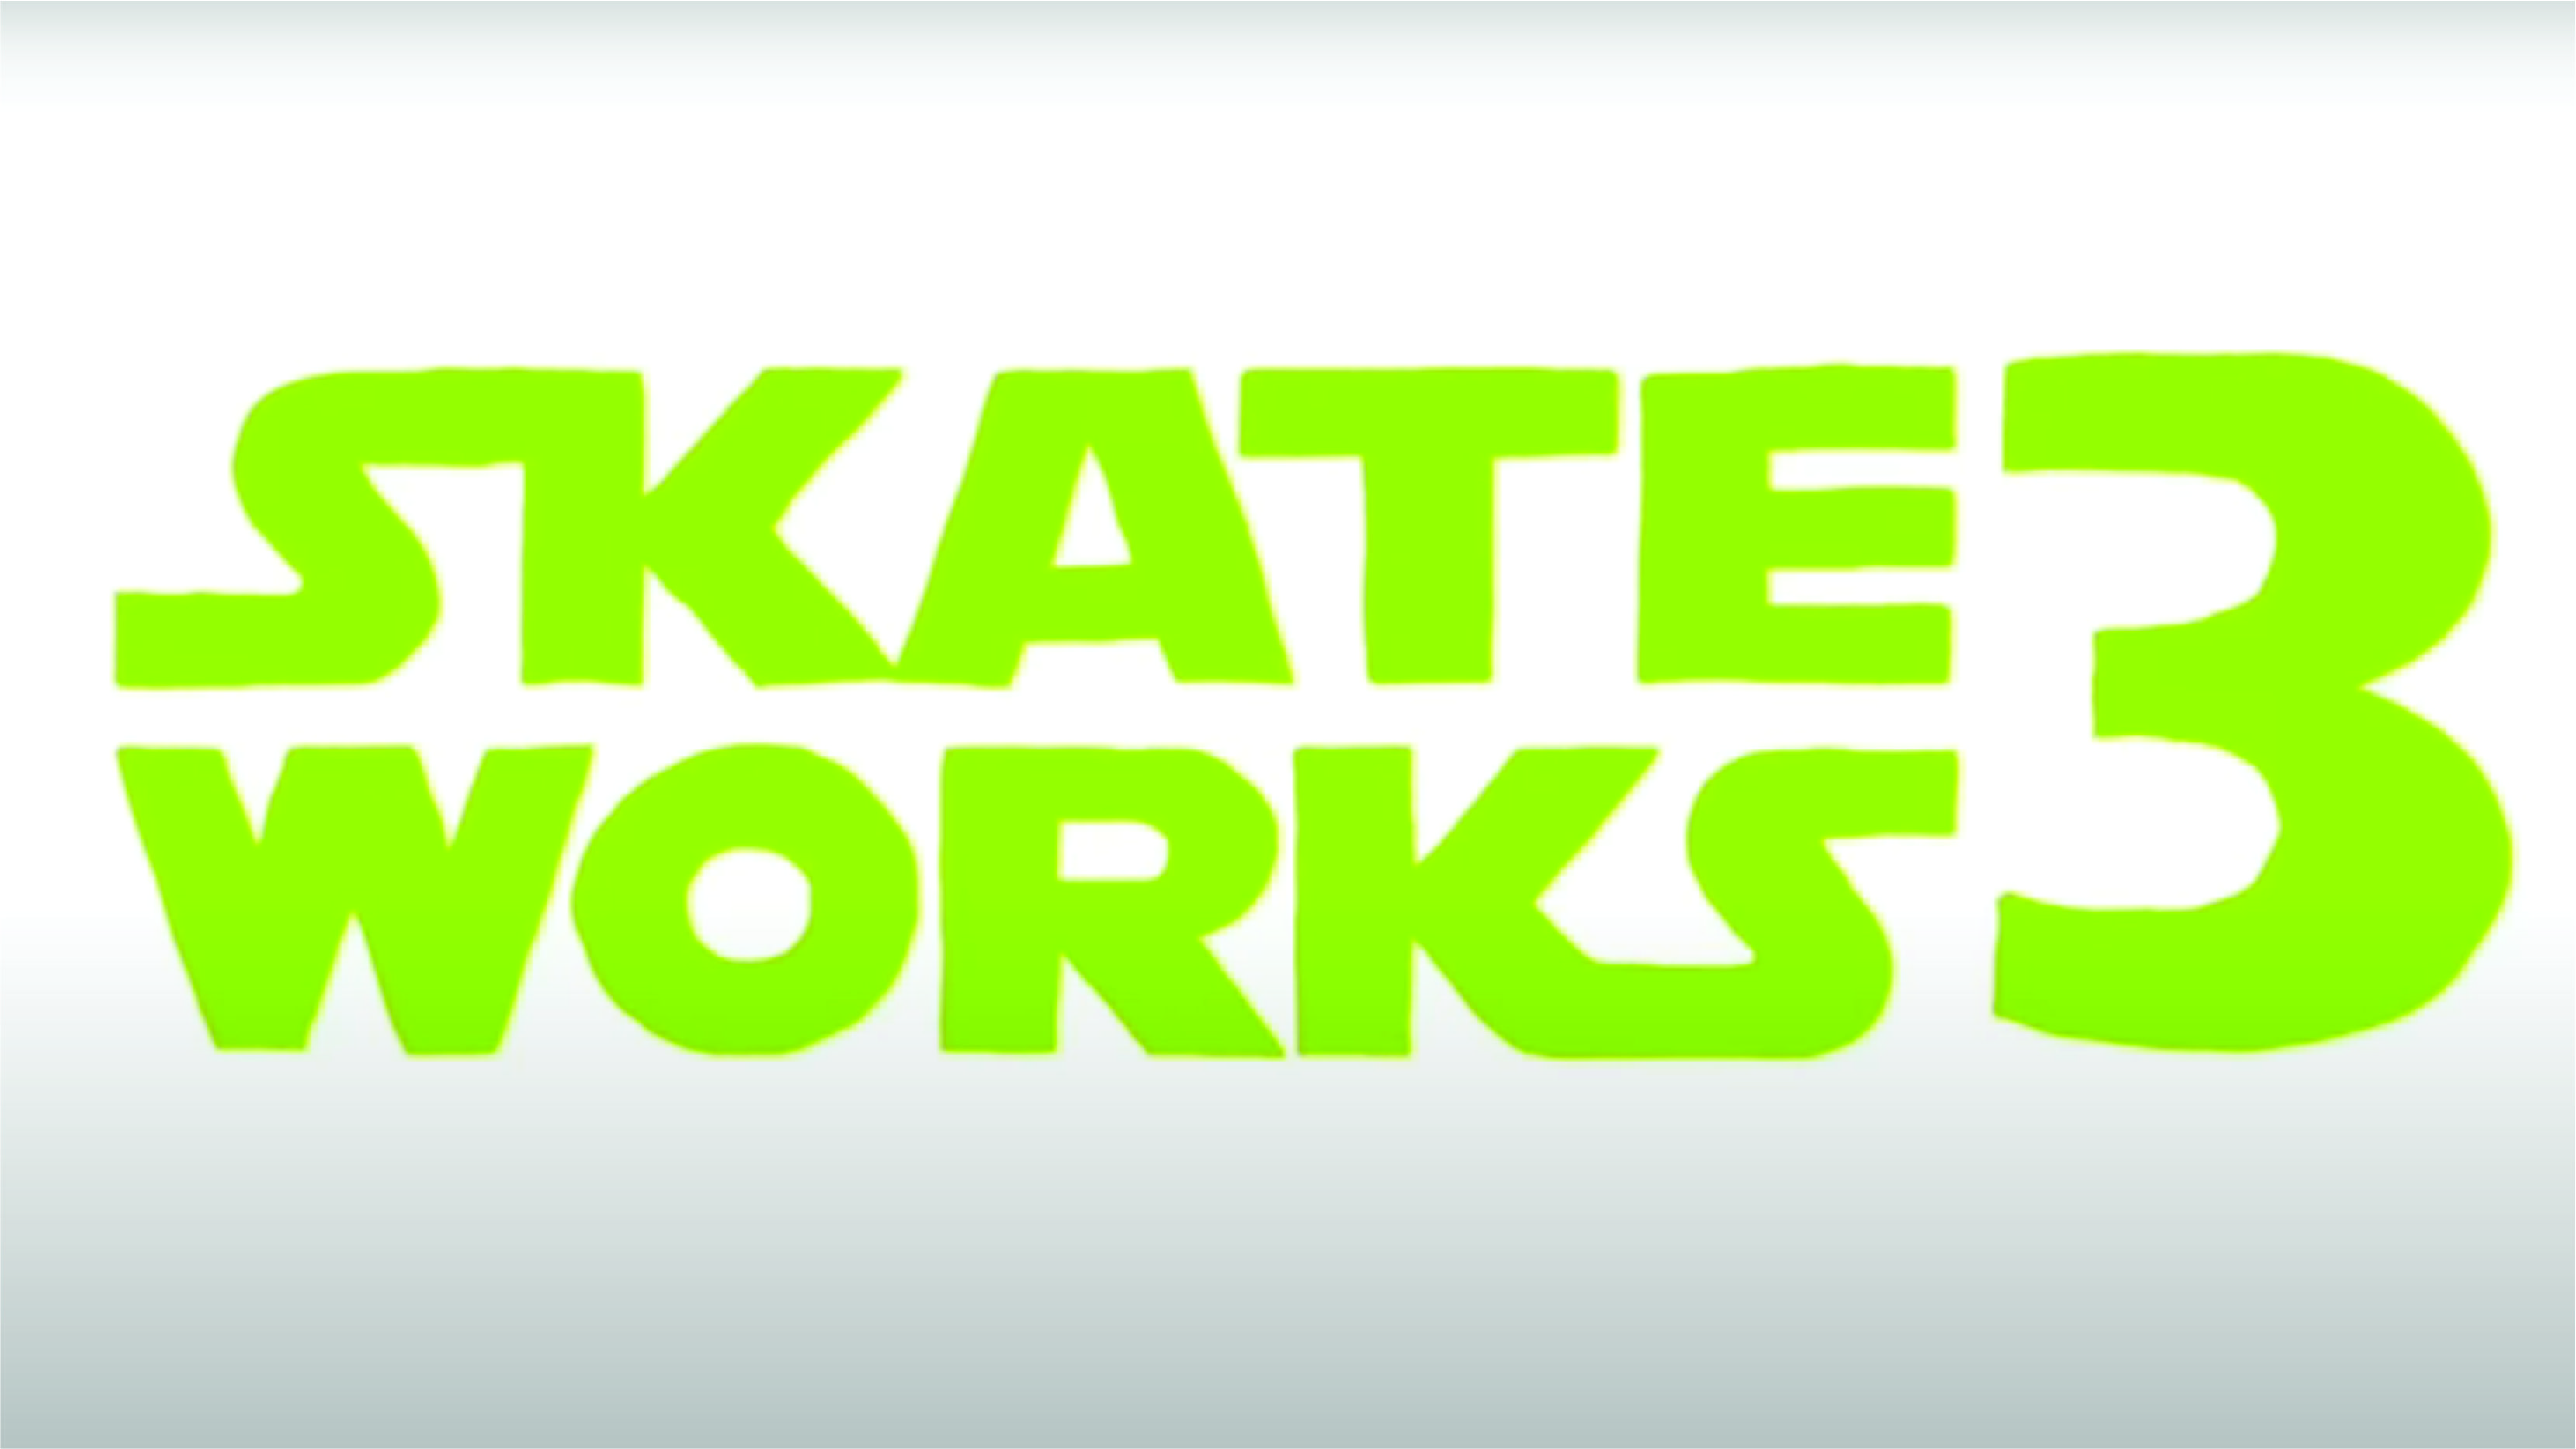 Skateworks - 3 cover